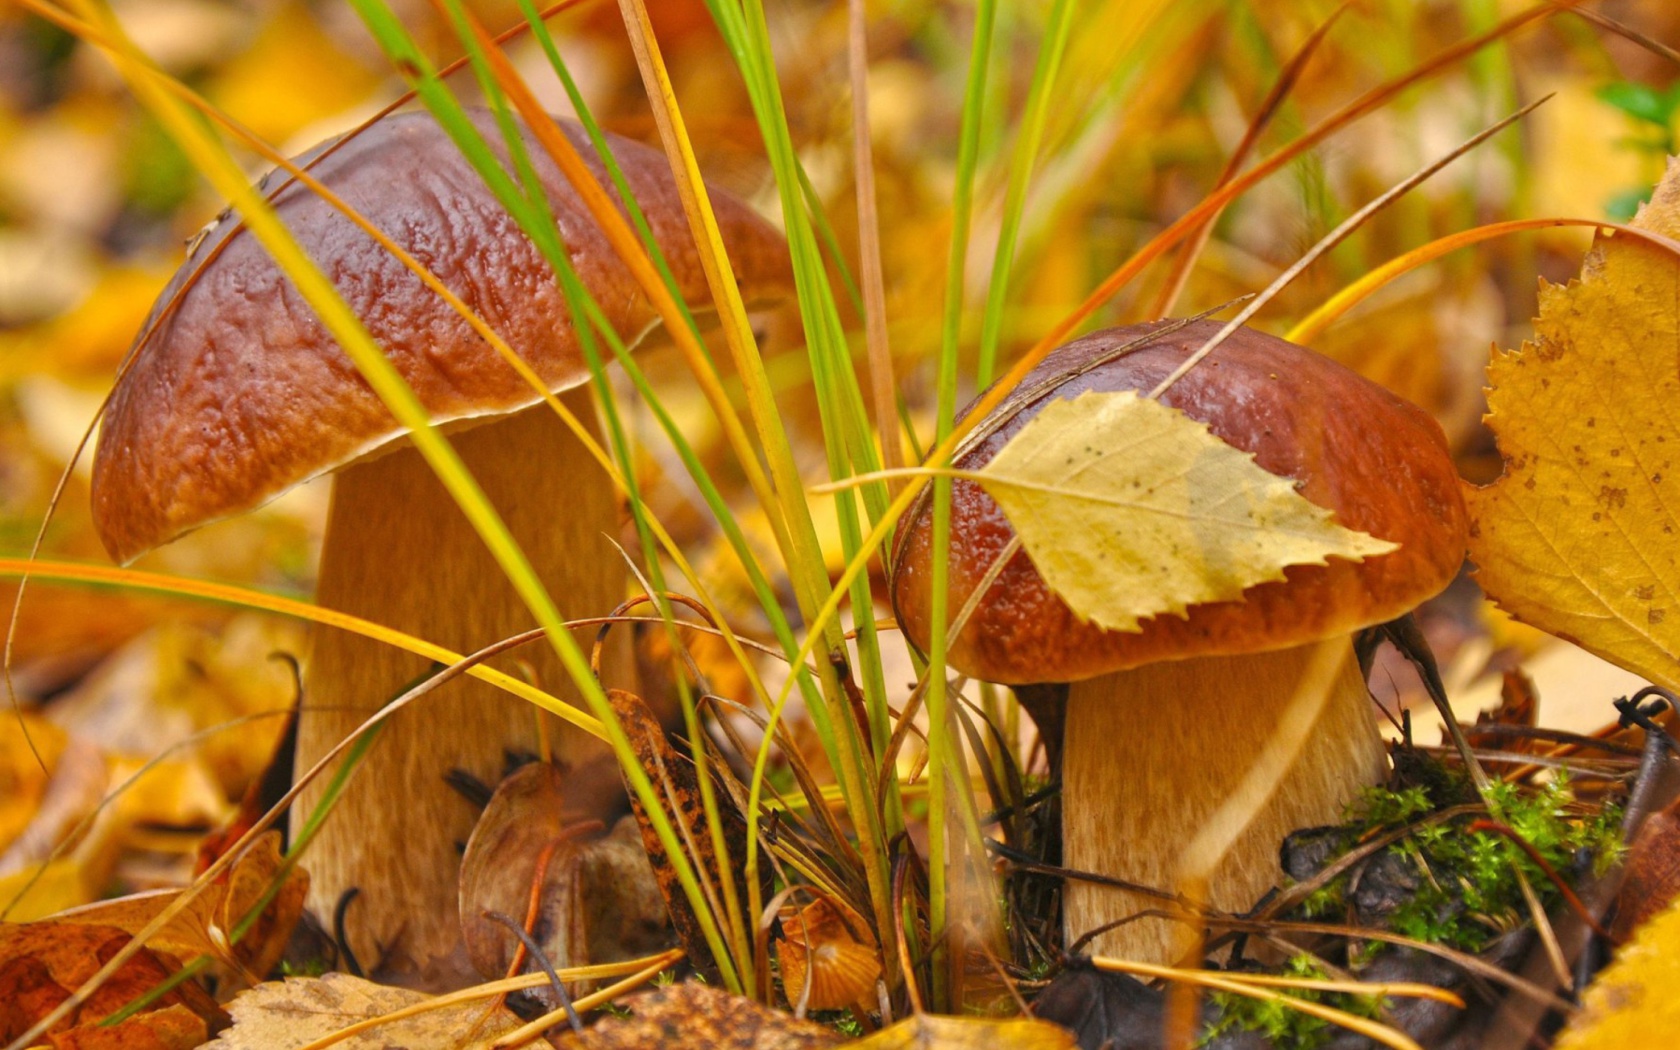 Обои Autumn Mushrooms with Yellow Leaves 1680x1050